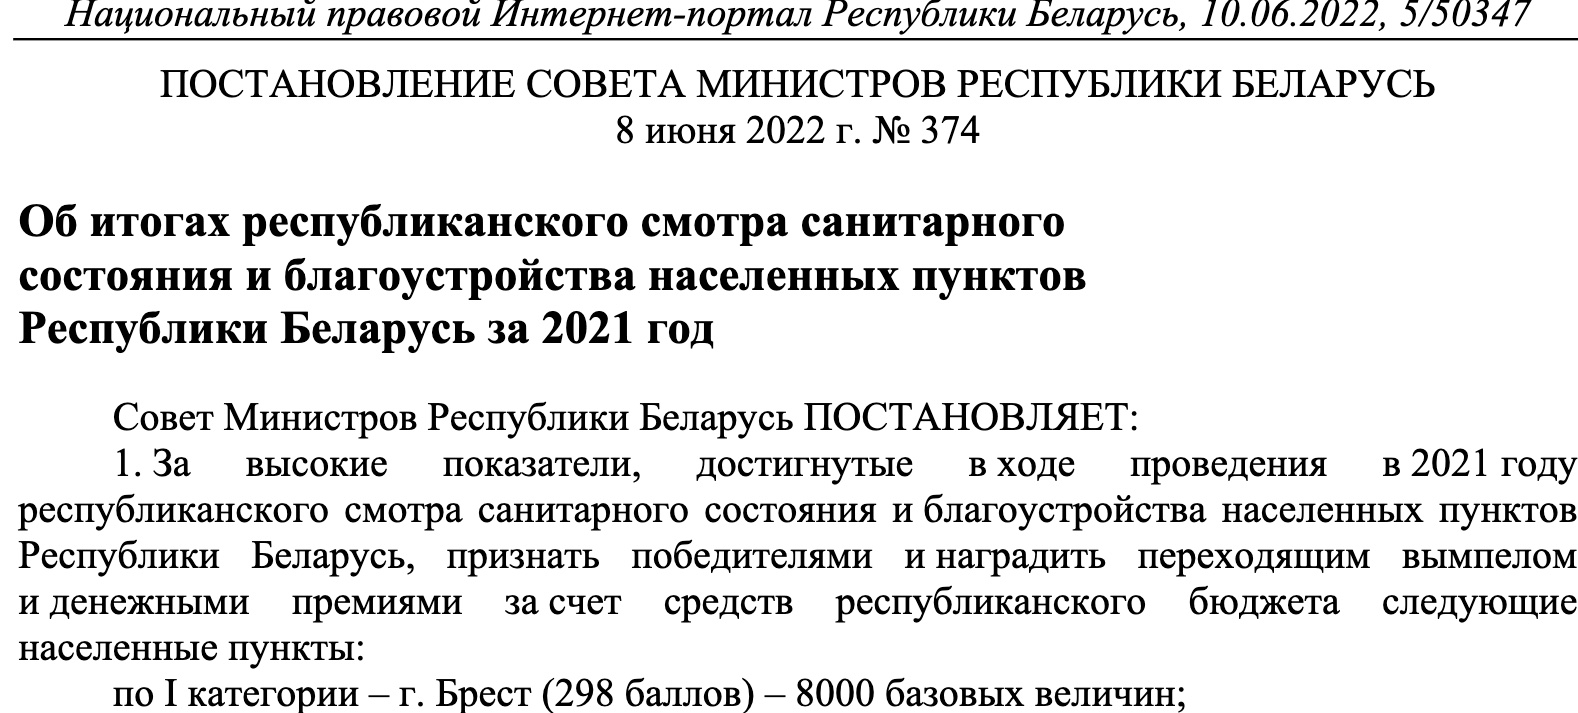 Выдержка из постановления Совета Министров №374 от 8 июня 2022 года. Фото: Национально-правовой интернет-портал.